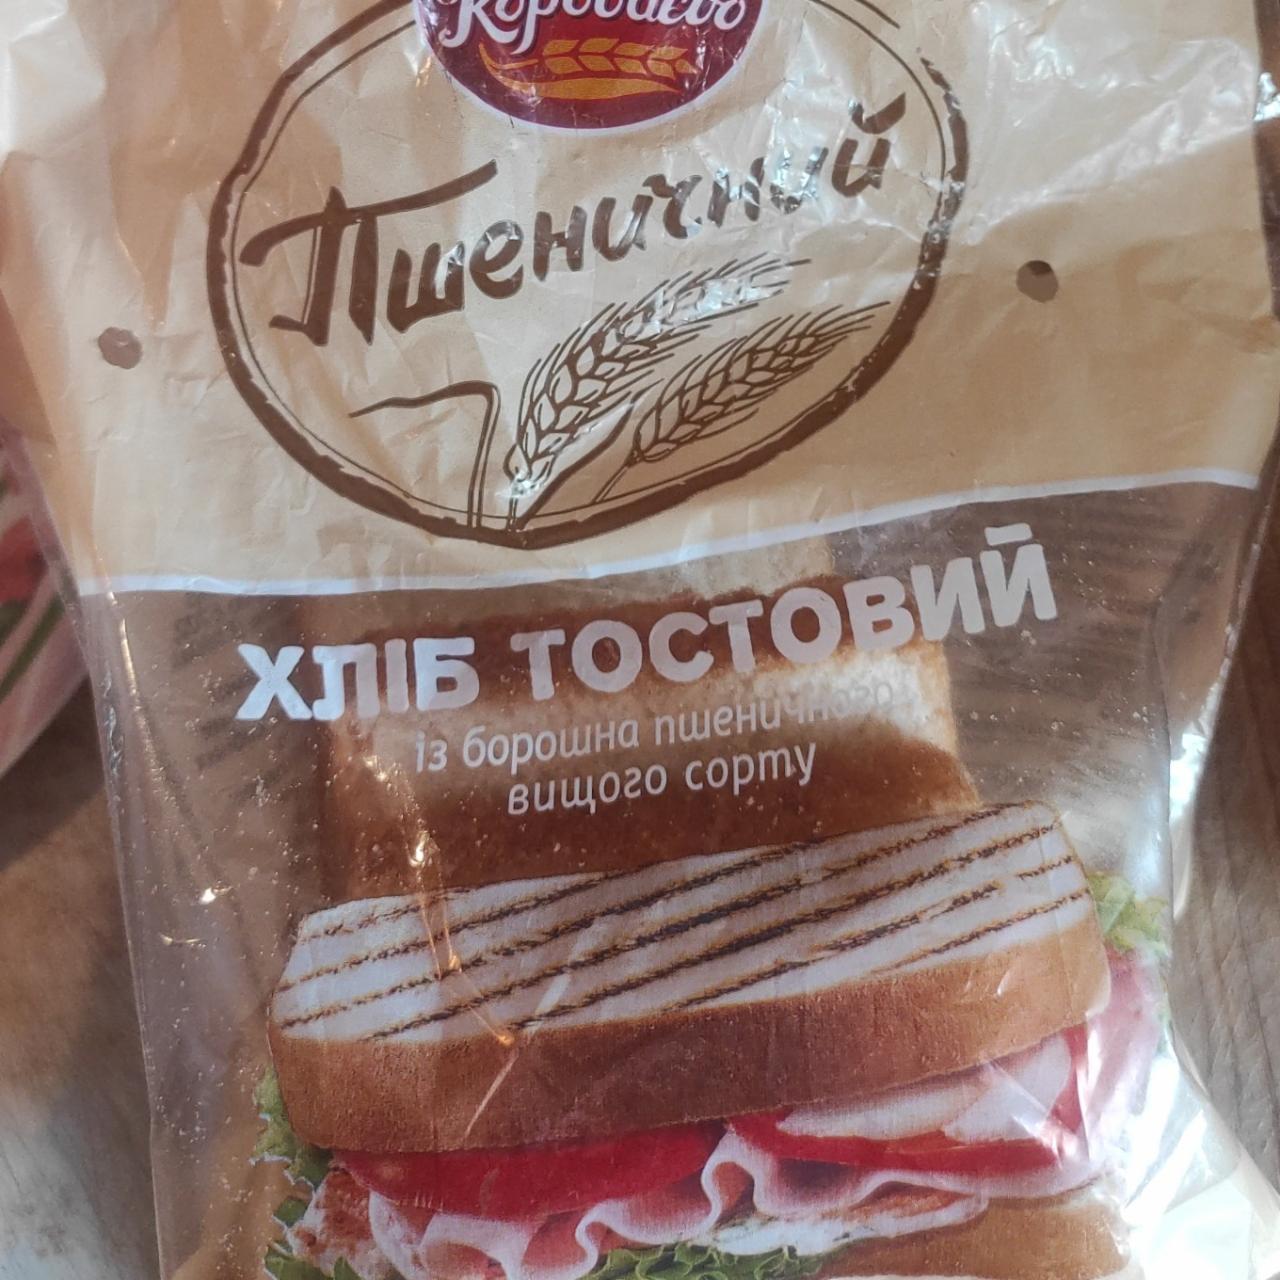 Фото - Хлеб тостовый из муки пшеничной Пшеничный Короваево